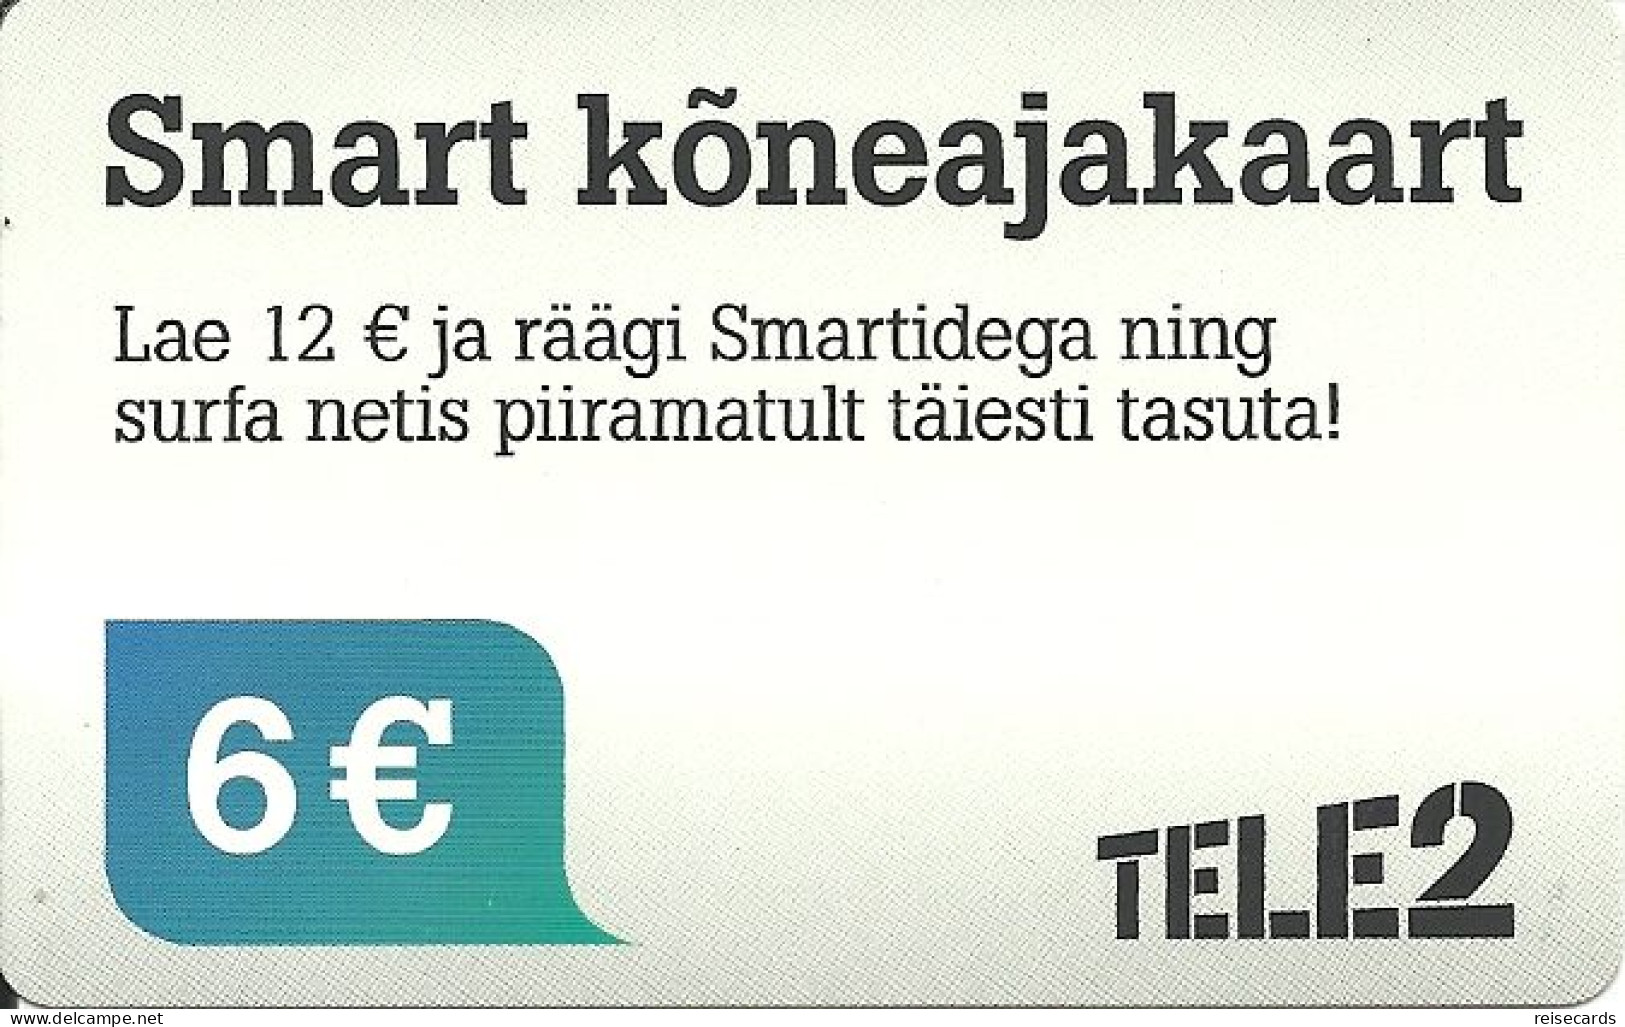 Estonia: Prepaid Tele2 Smart - Estland